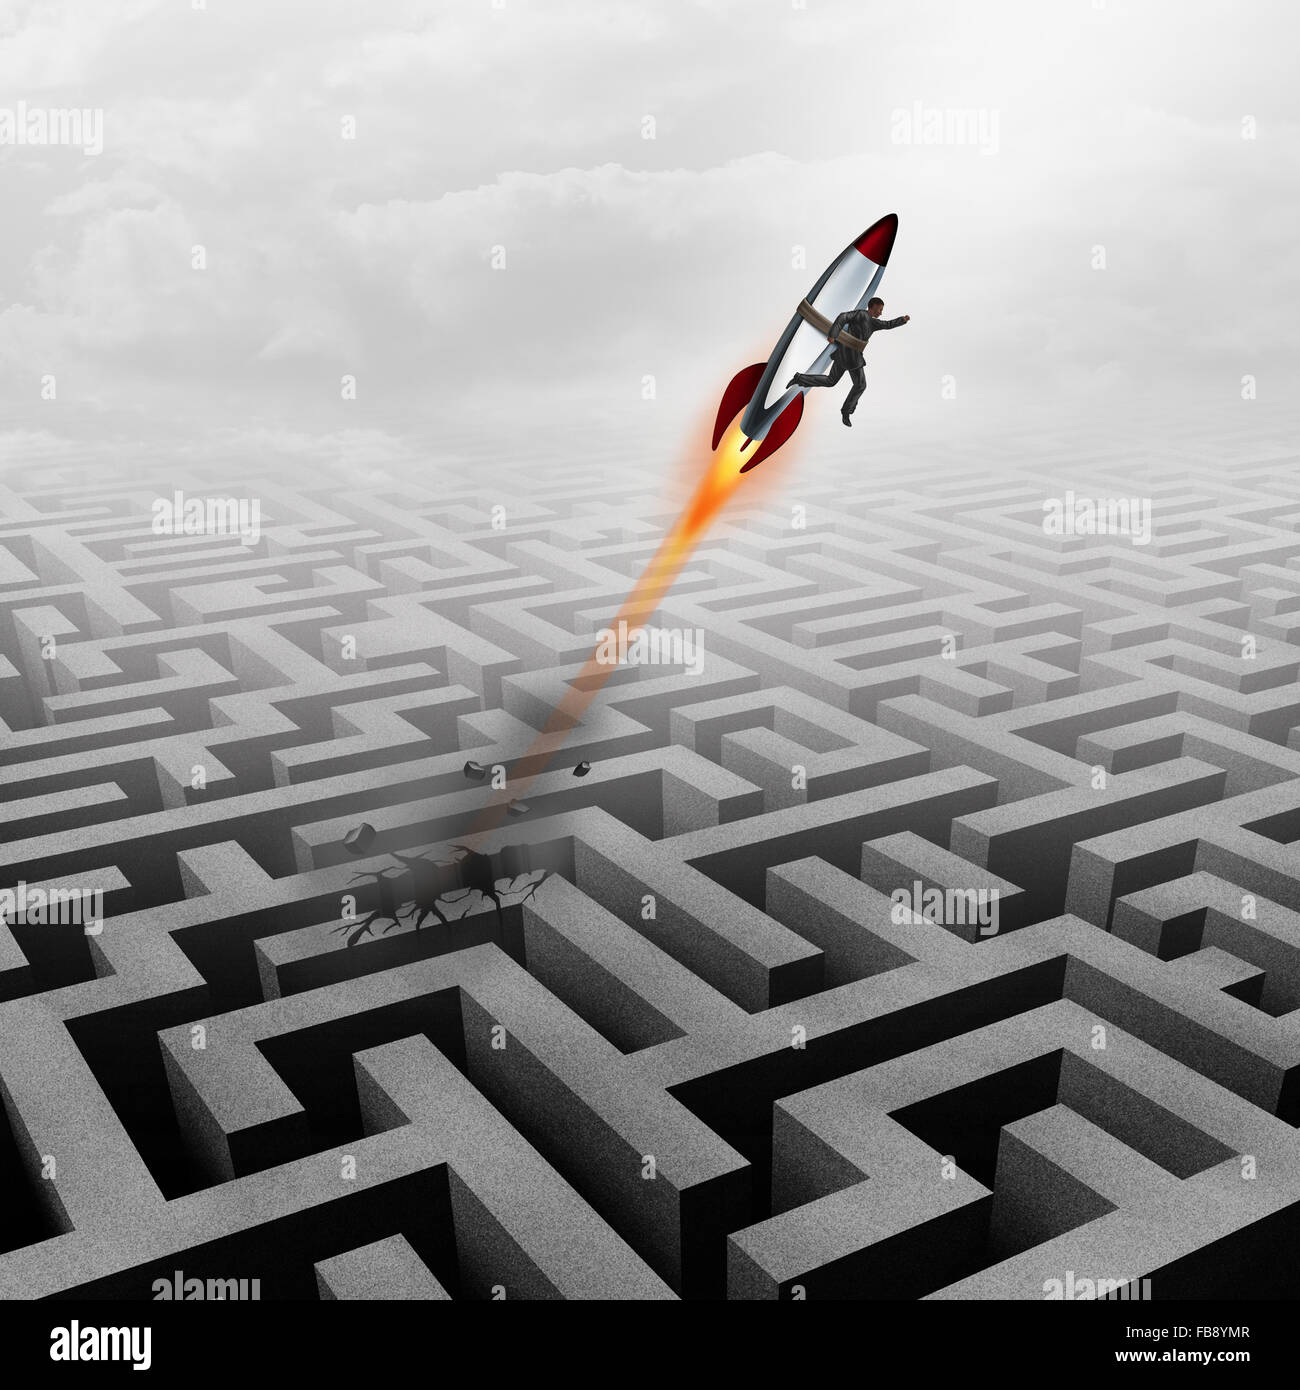 Business-Erfolg-Konzept und erfolgreicher kluger Geschäftsmann Motivation Metapher als ein Mann mit einer Rakete nach oben Richtung ein berufliches Ziel die Nachwirkungen einer metaphorischen Labyrinth Puzzle Hindernis aus einem Labyrinth zu brechen. Stockfoto